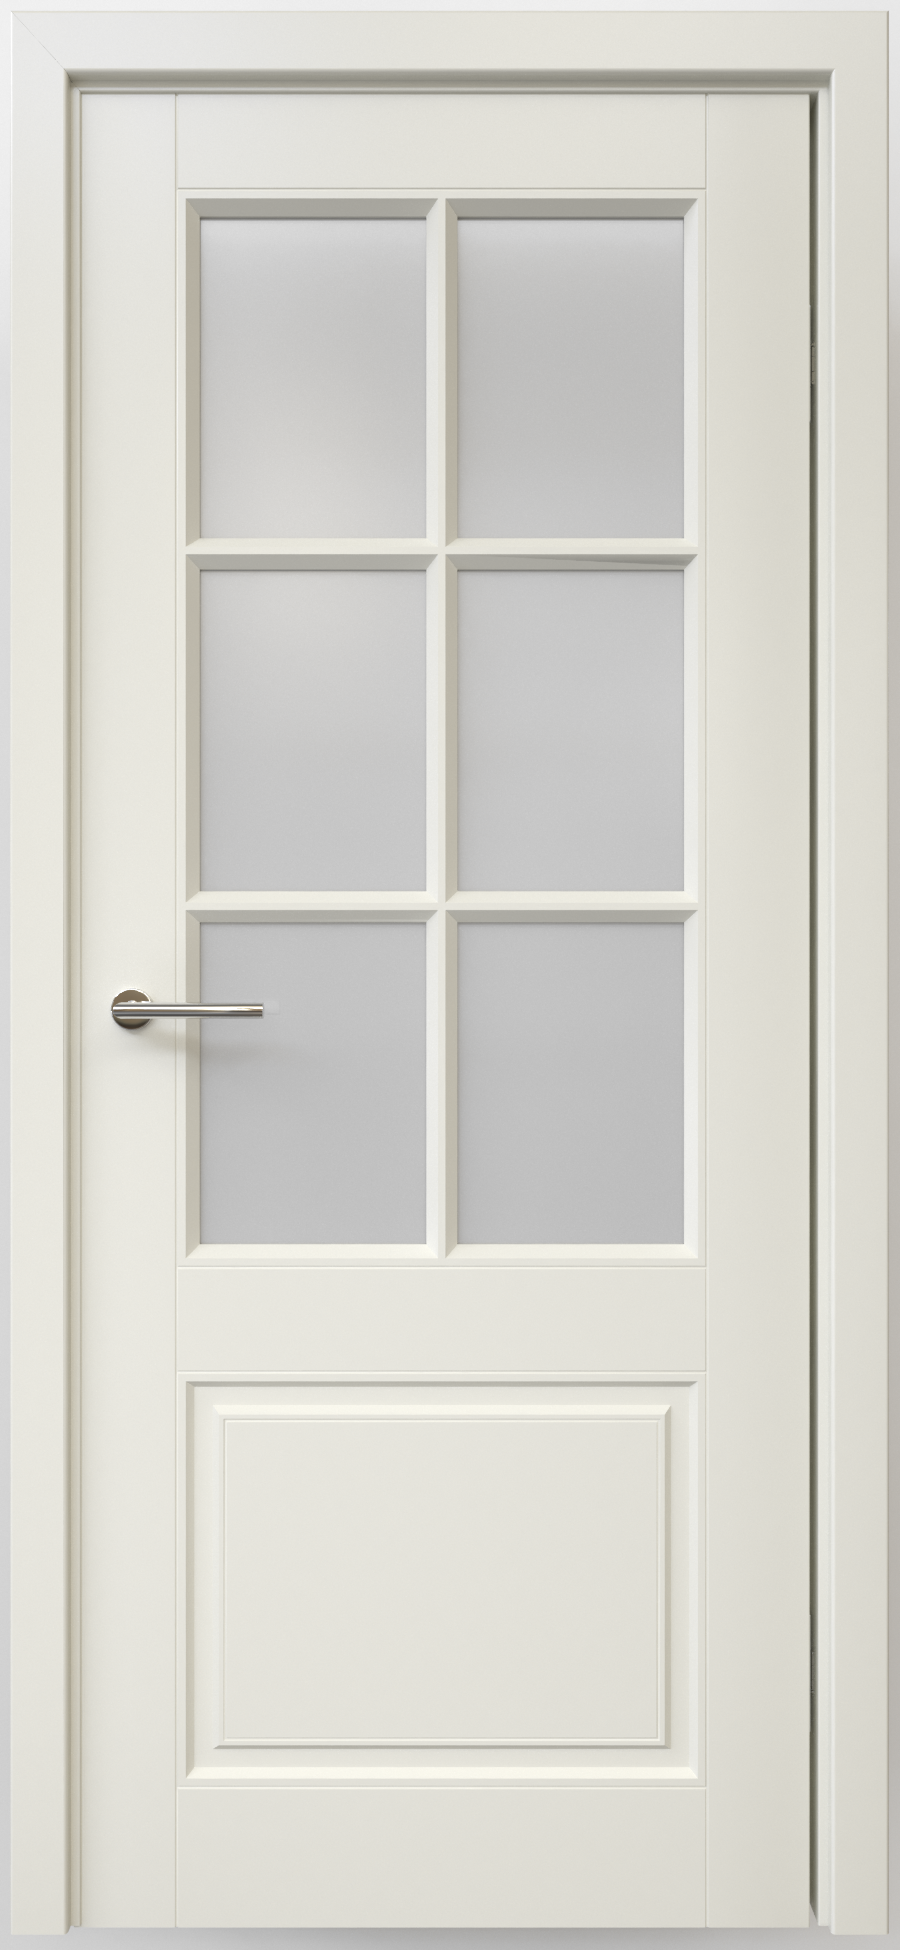 Полотно дверное остекленное Эмаль Классика-4 ЛЕВОЕ 600 латте стекло мателюкс (защелка маг.)